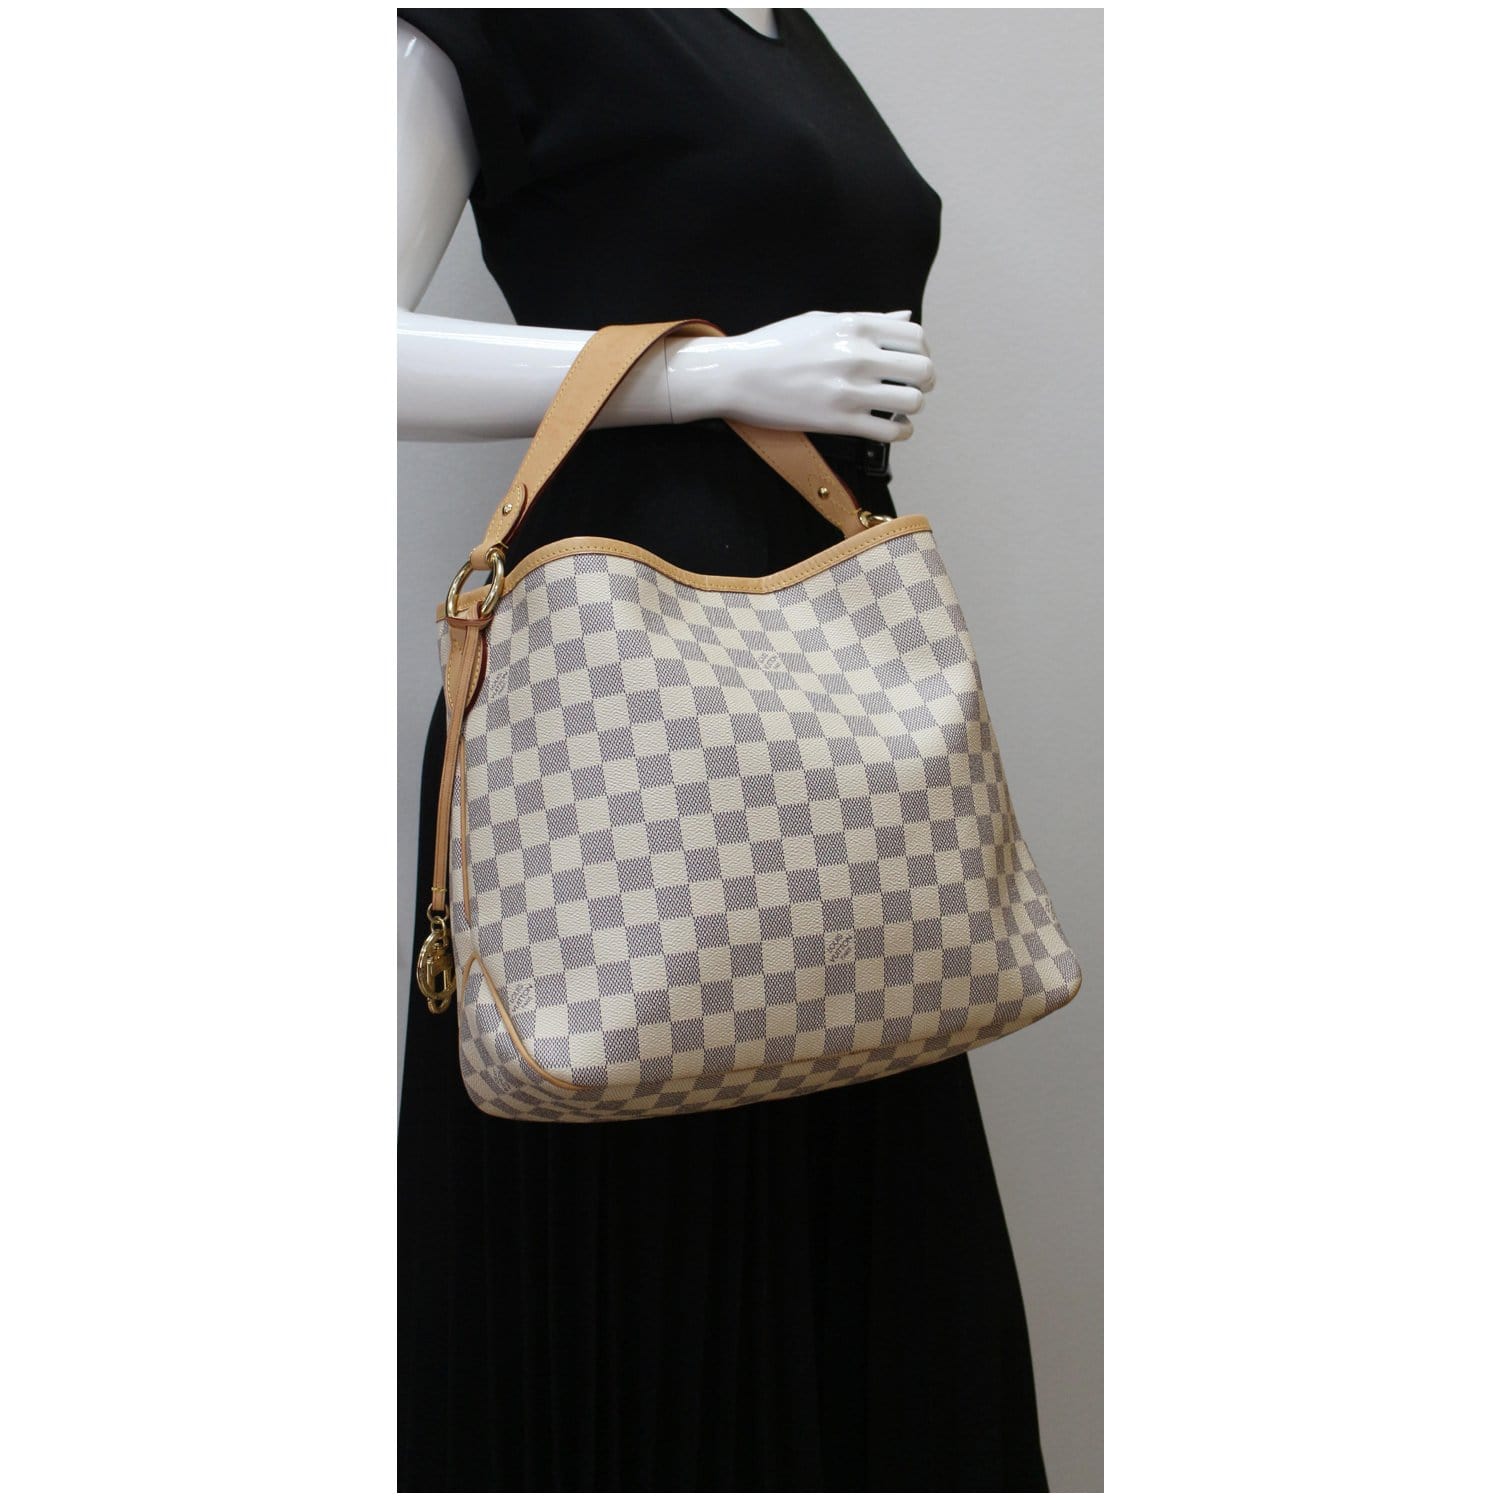 Louis Vuitton, Accessories, Louis Vuitton Damier Azur Belt 525